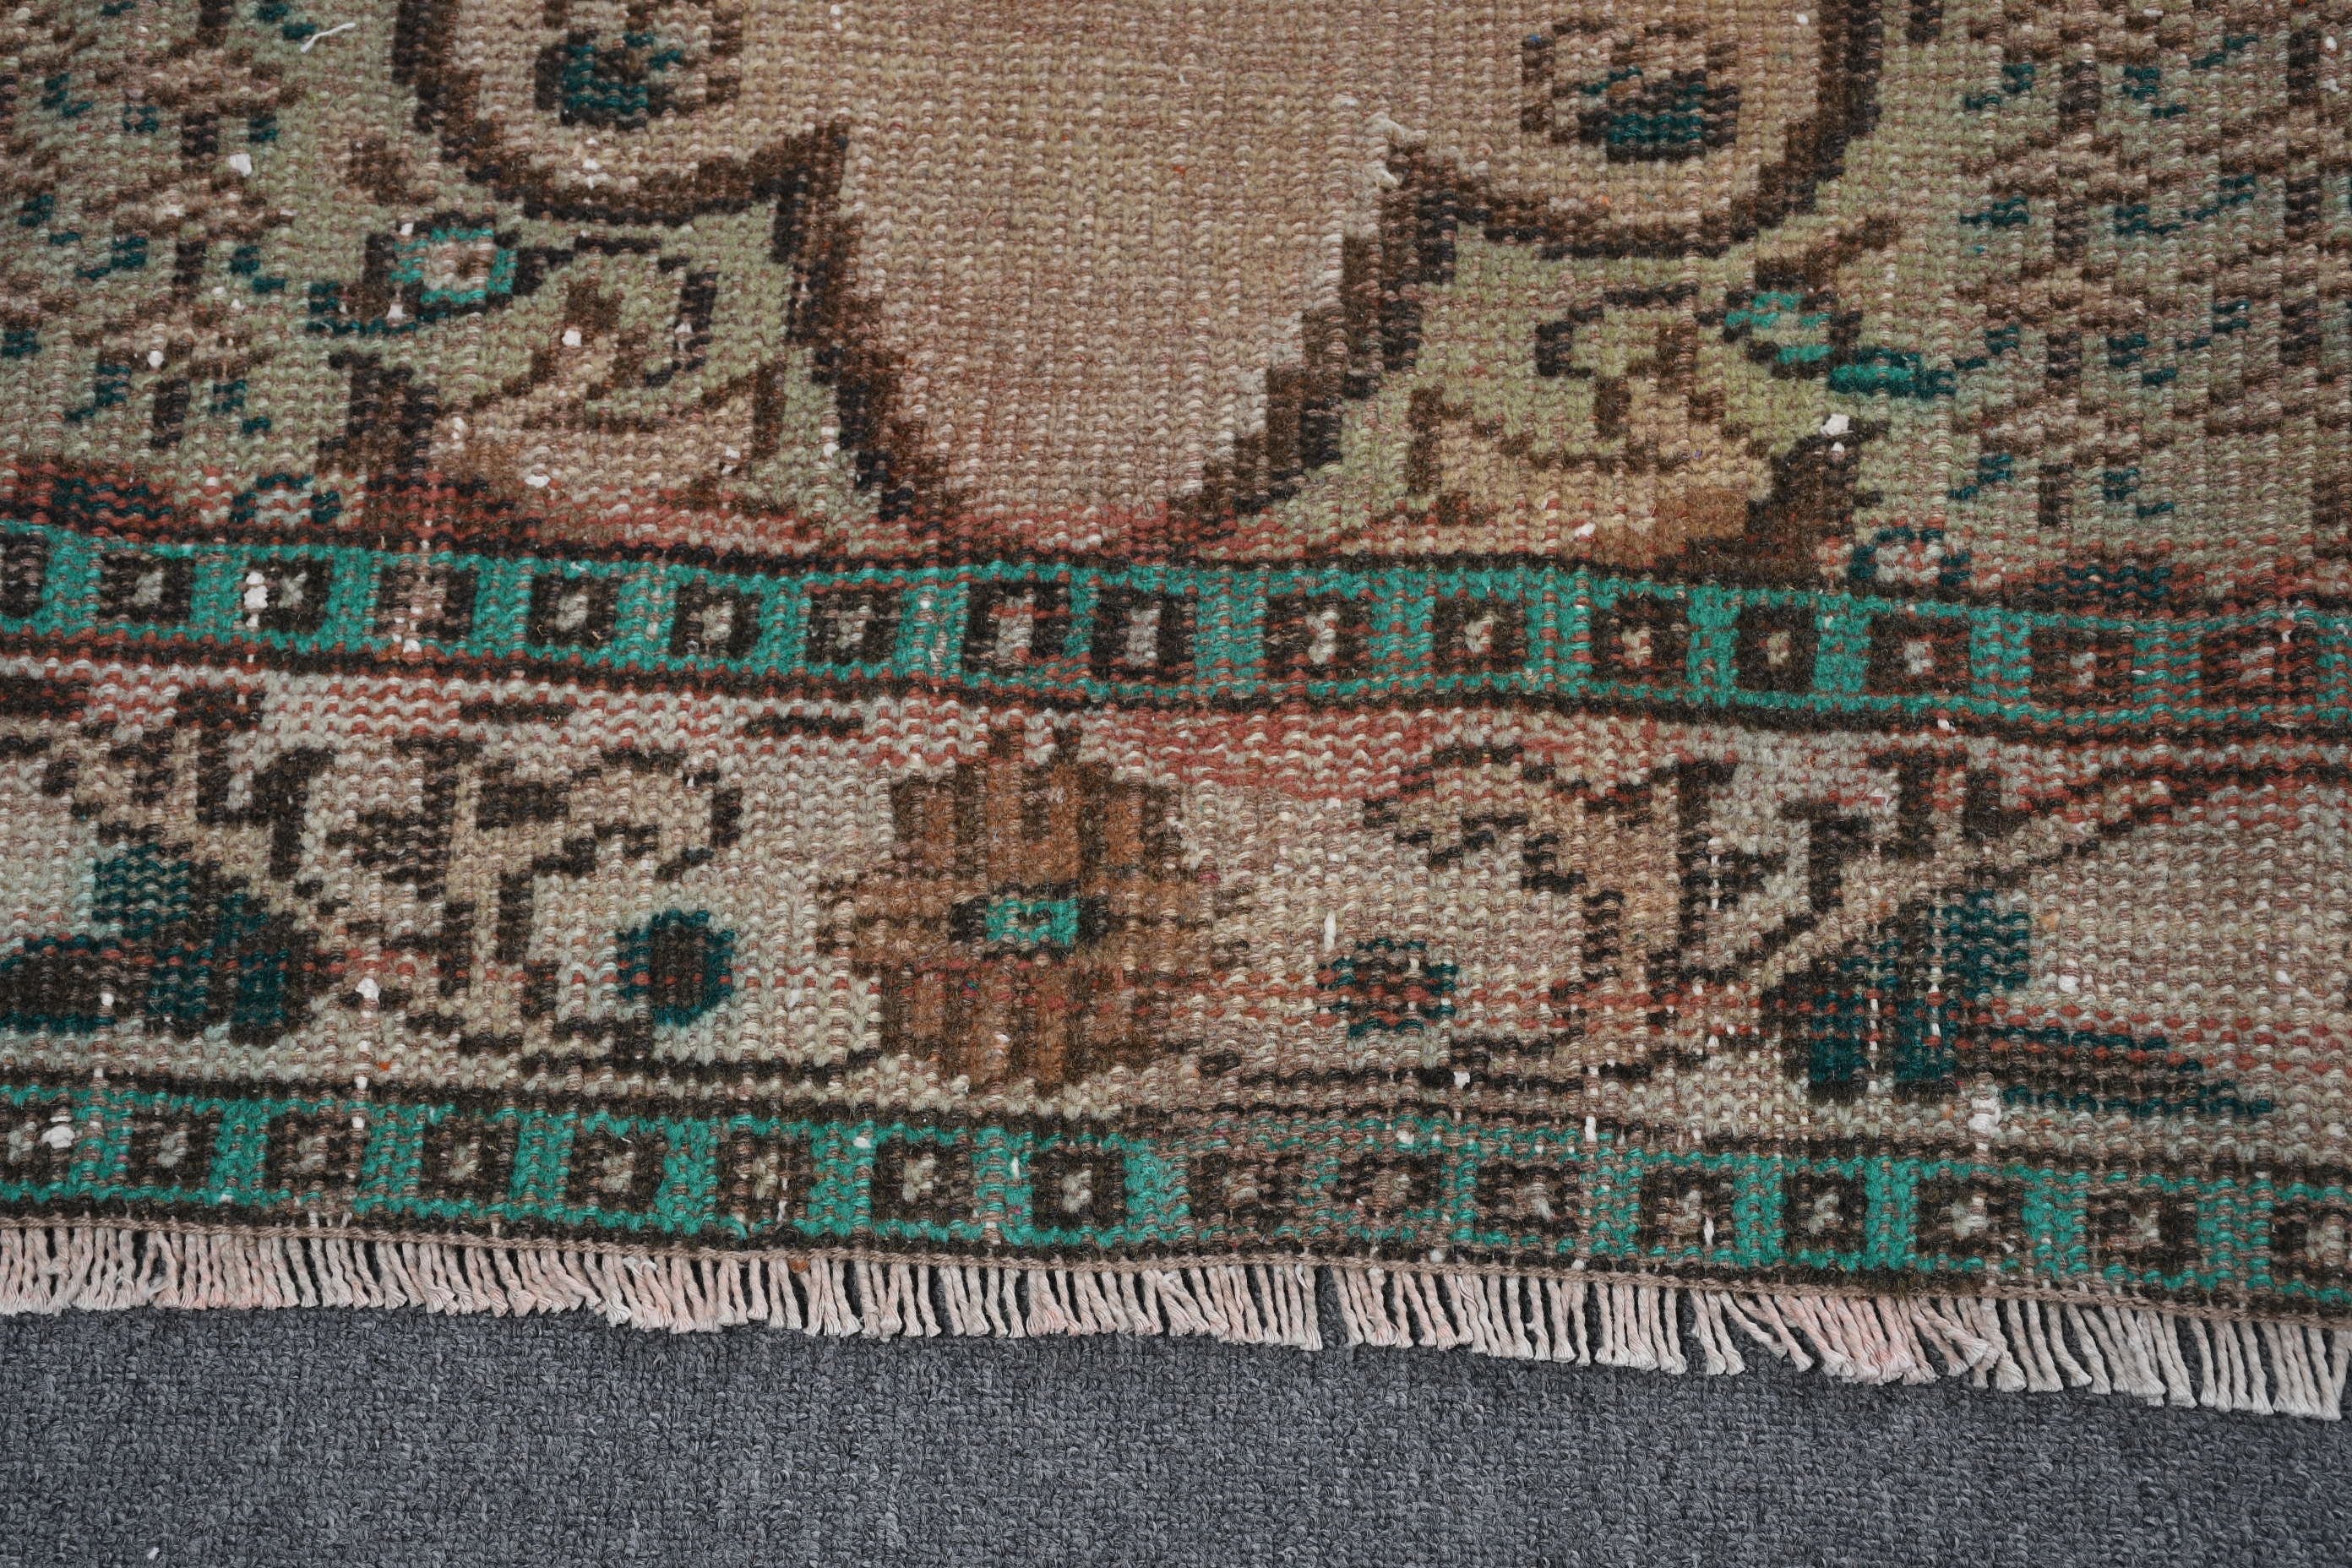 Moroccan Rug, Brown Wool Rugs, 5.4x8.7 ft Large Rugs, Oriental Rugs, Vintage Rug, Handwoven Rug, Bedroom Rug, Turkish Rug, Living Room Rug